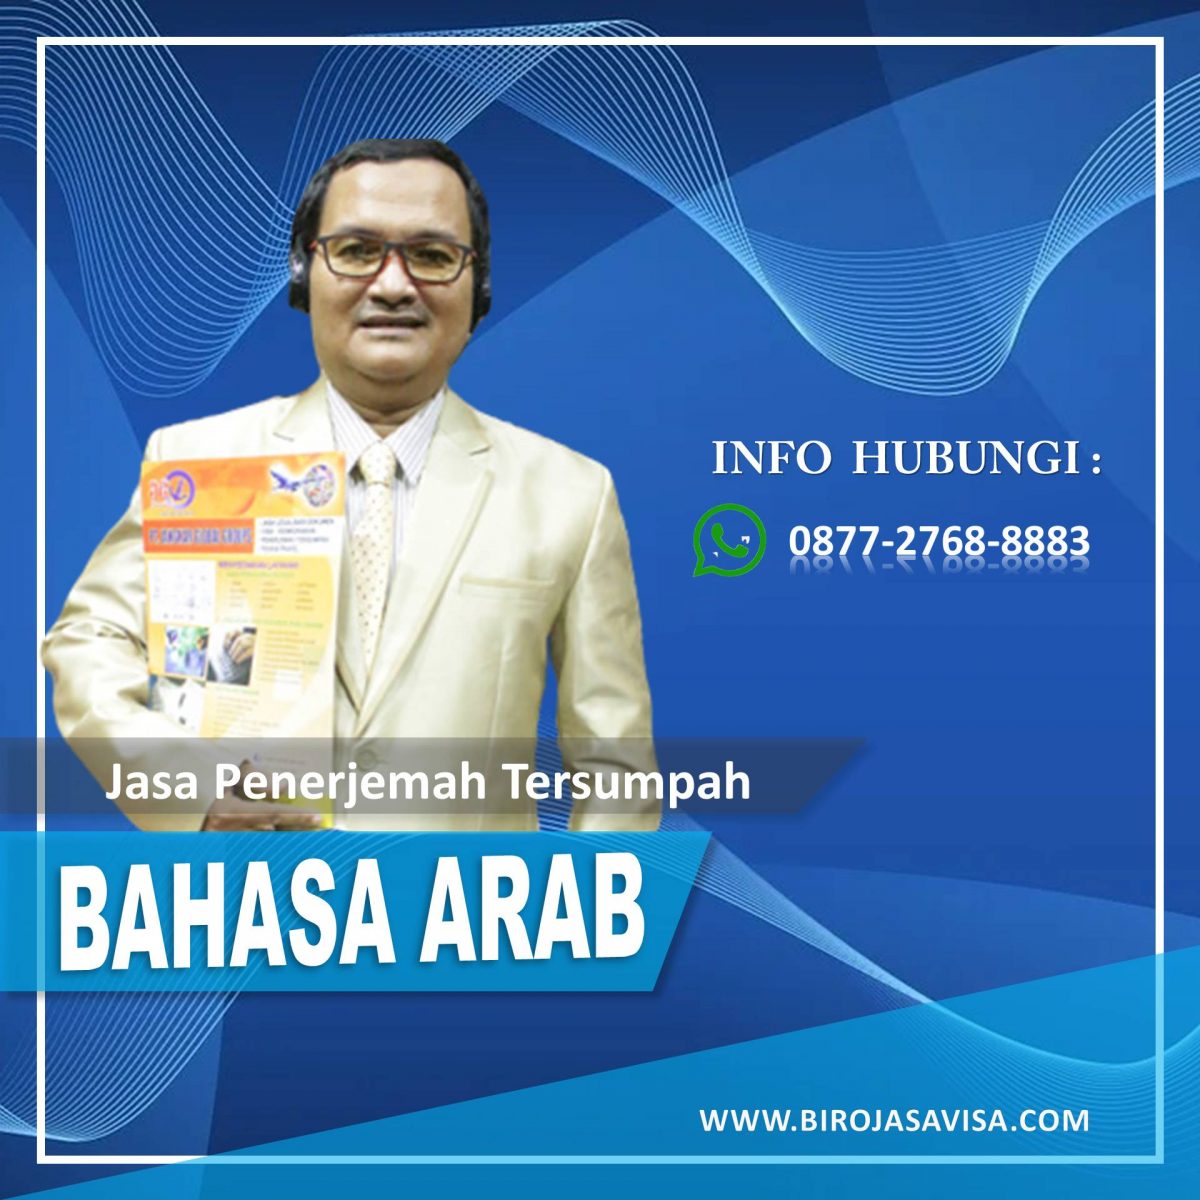 Penerjemah Tersumpah Bahasa Arab Akurat dan Berkualitas di Rawa Badak Jakarta Utara, Hubungi 0877 2768 8883